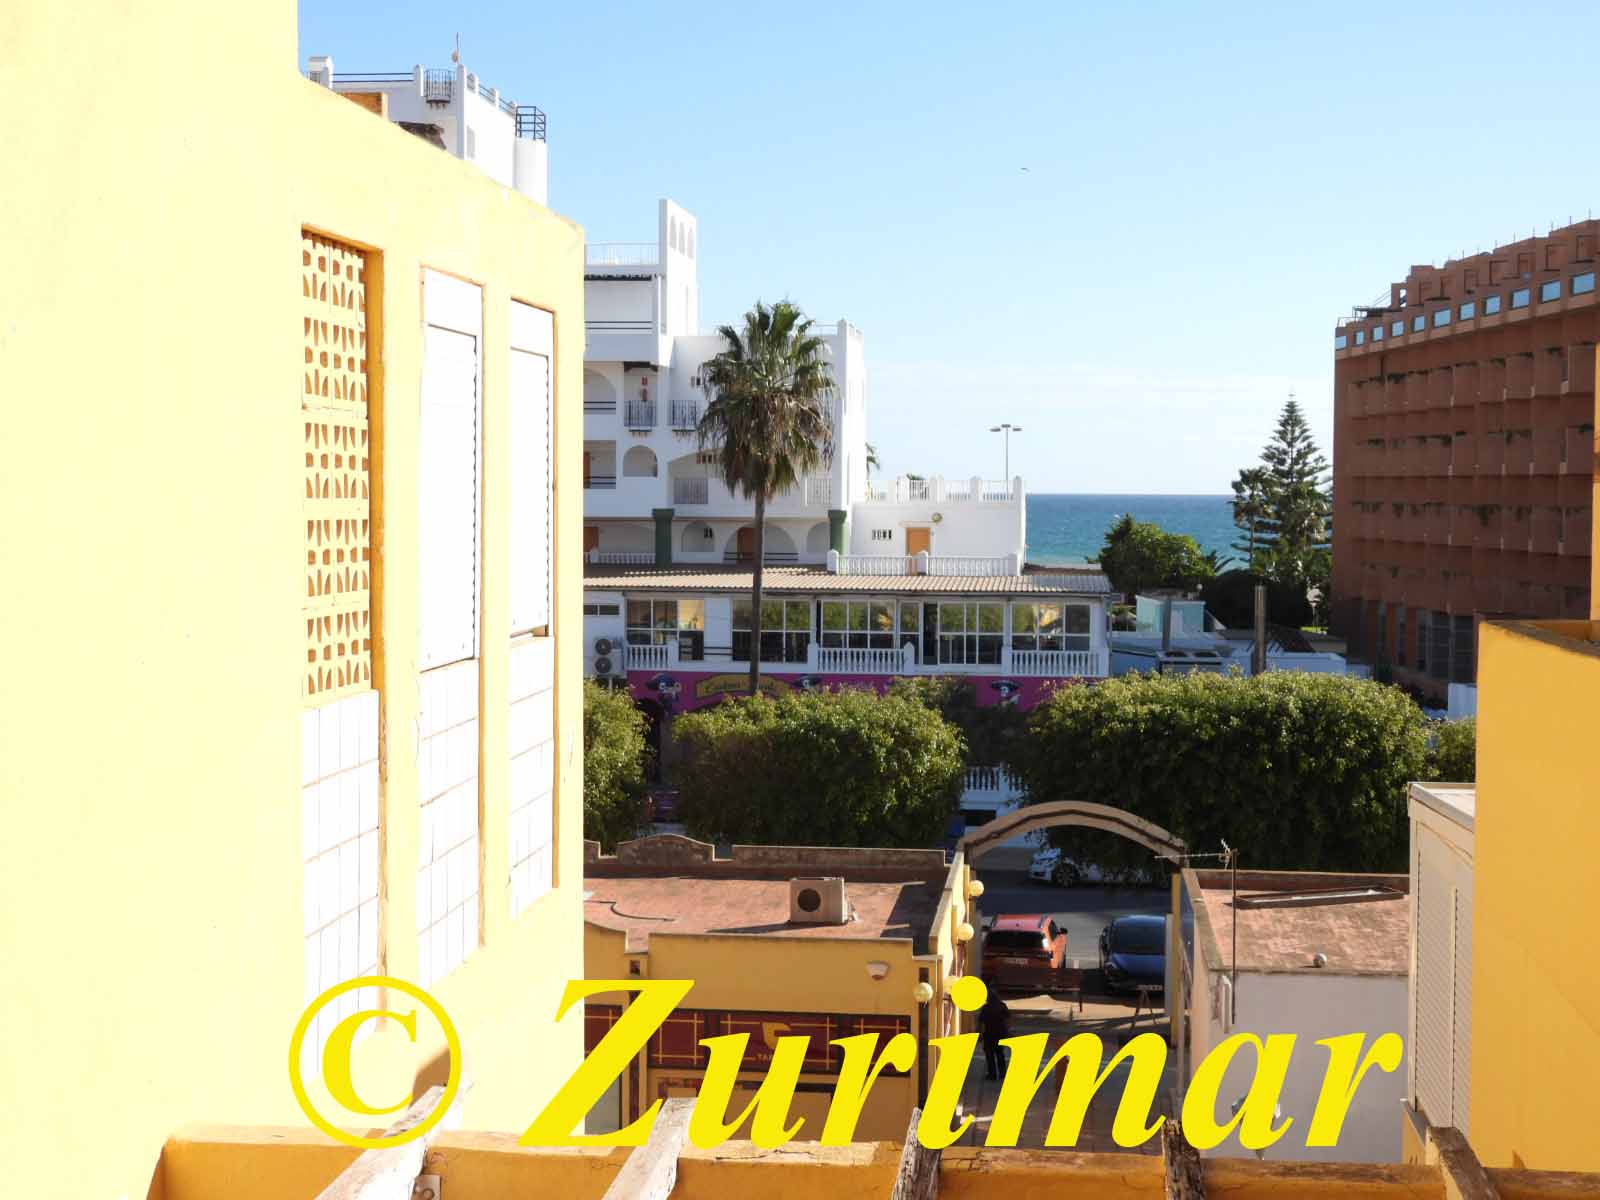 Zu verkaufen von appartement in
 Roquetas de Mar